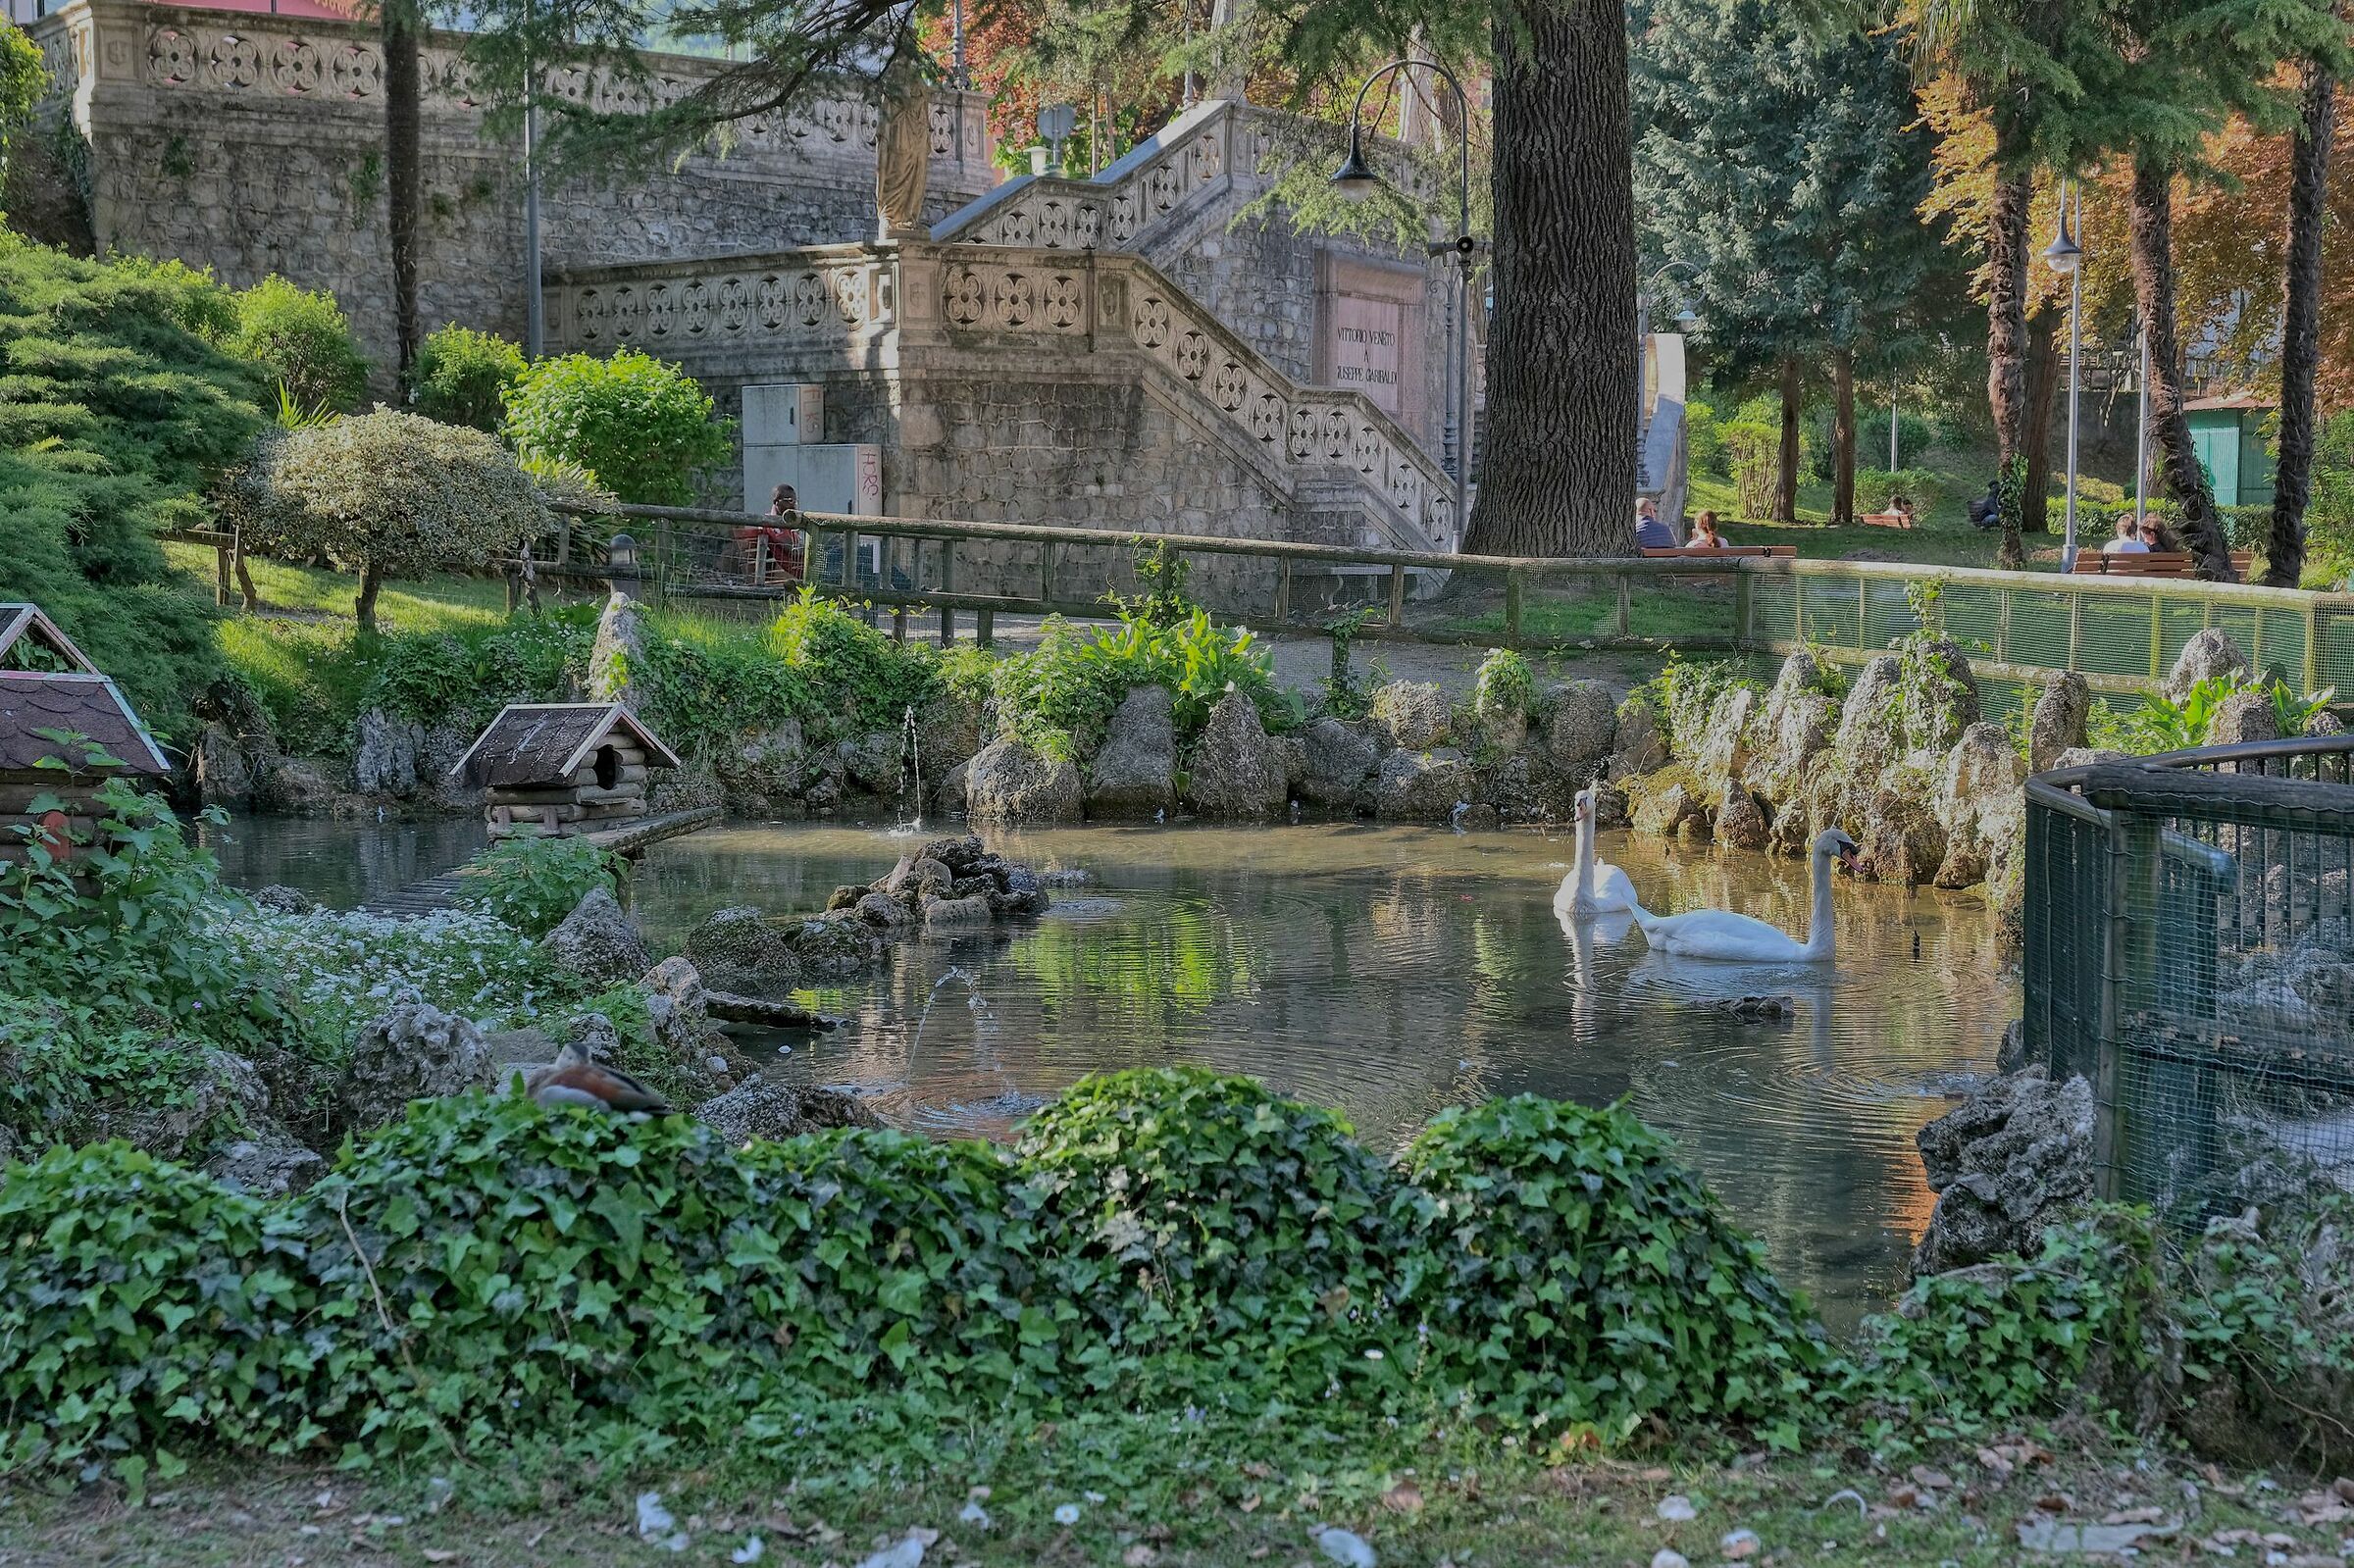 At The Parco di Vittorio Veneto....